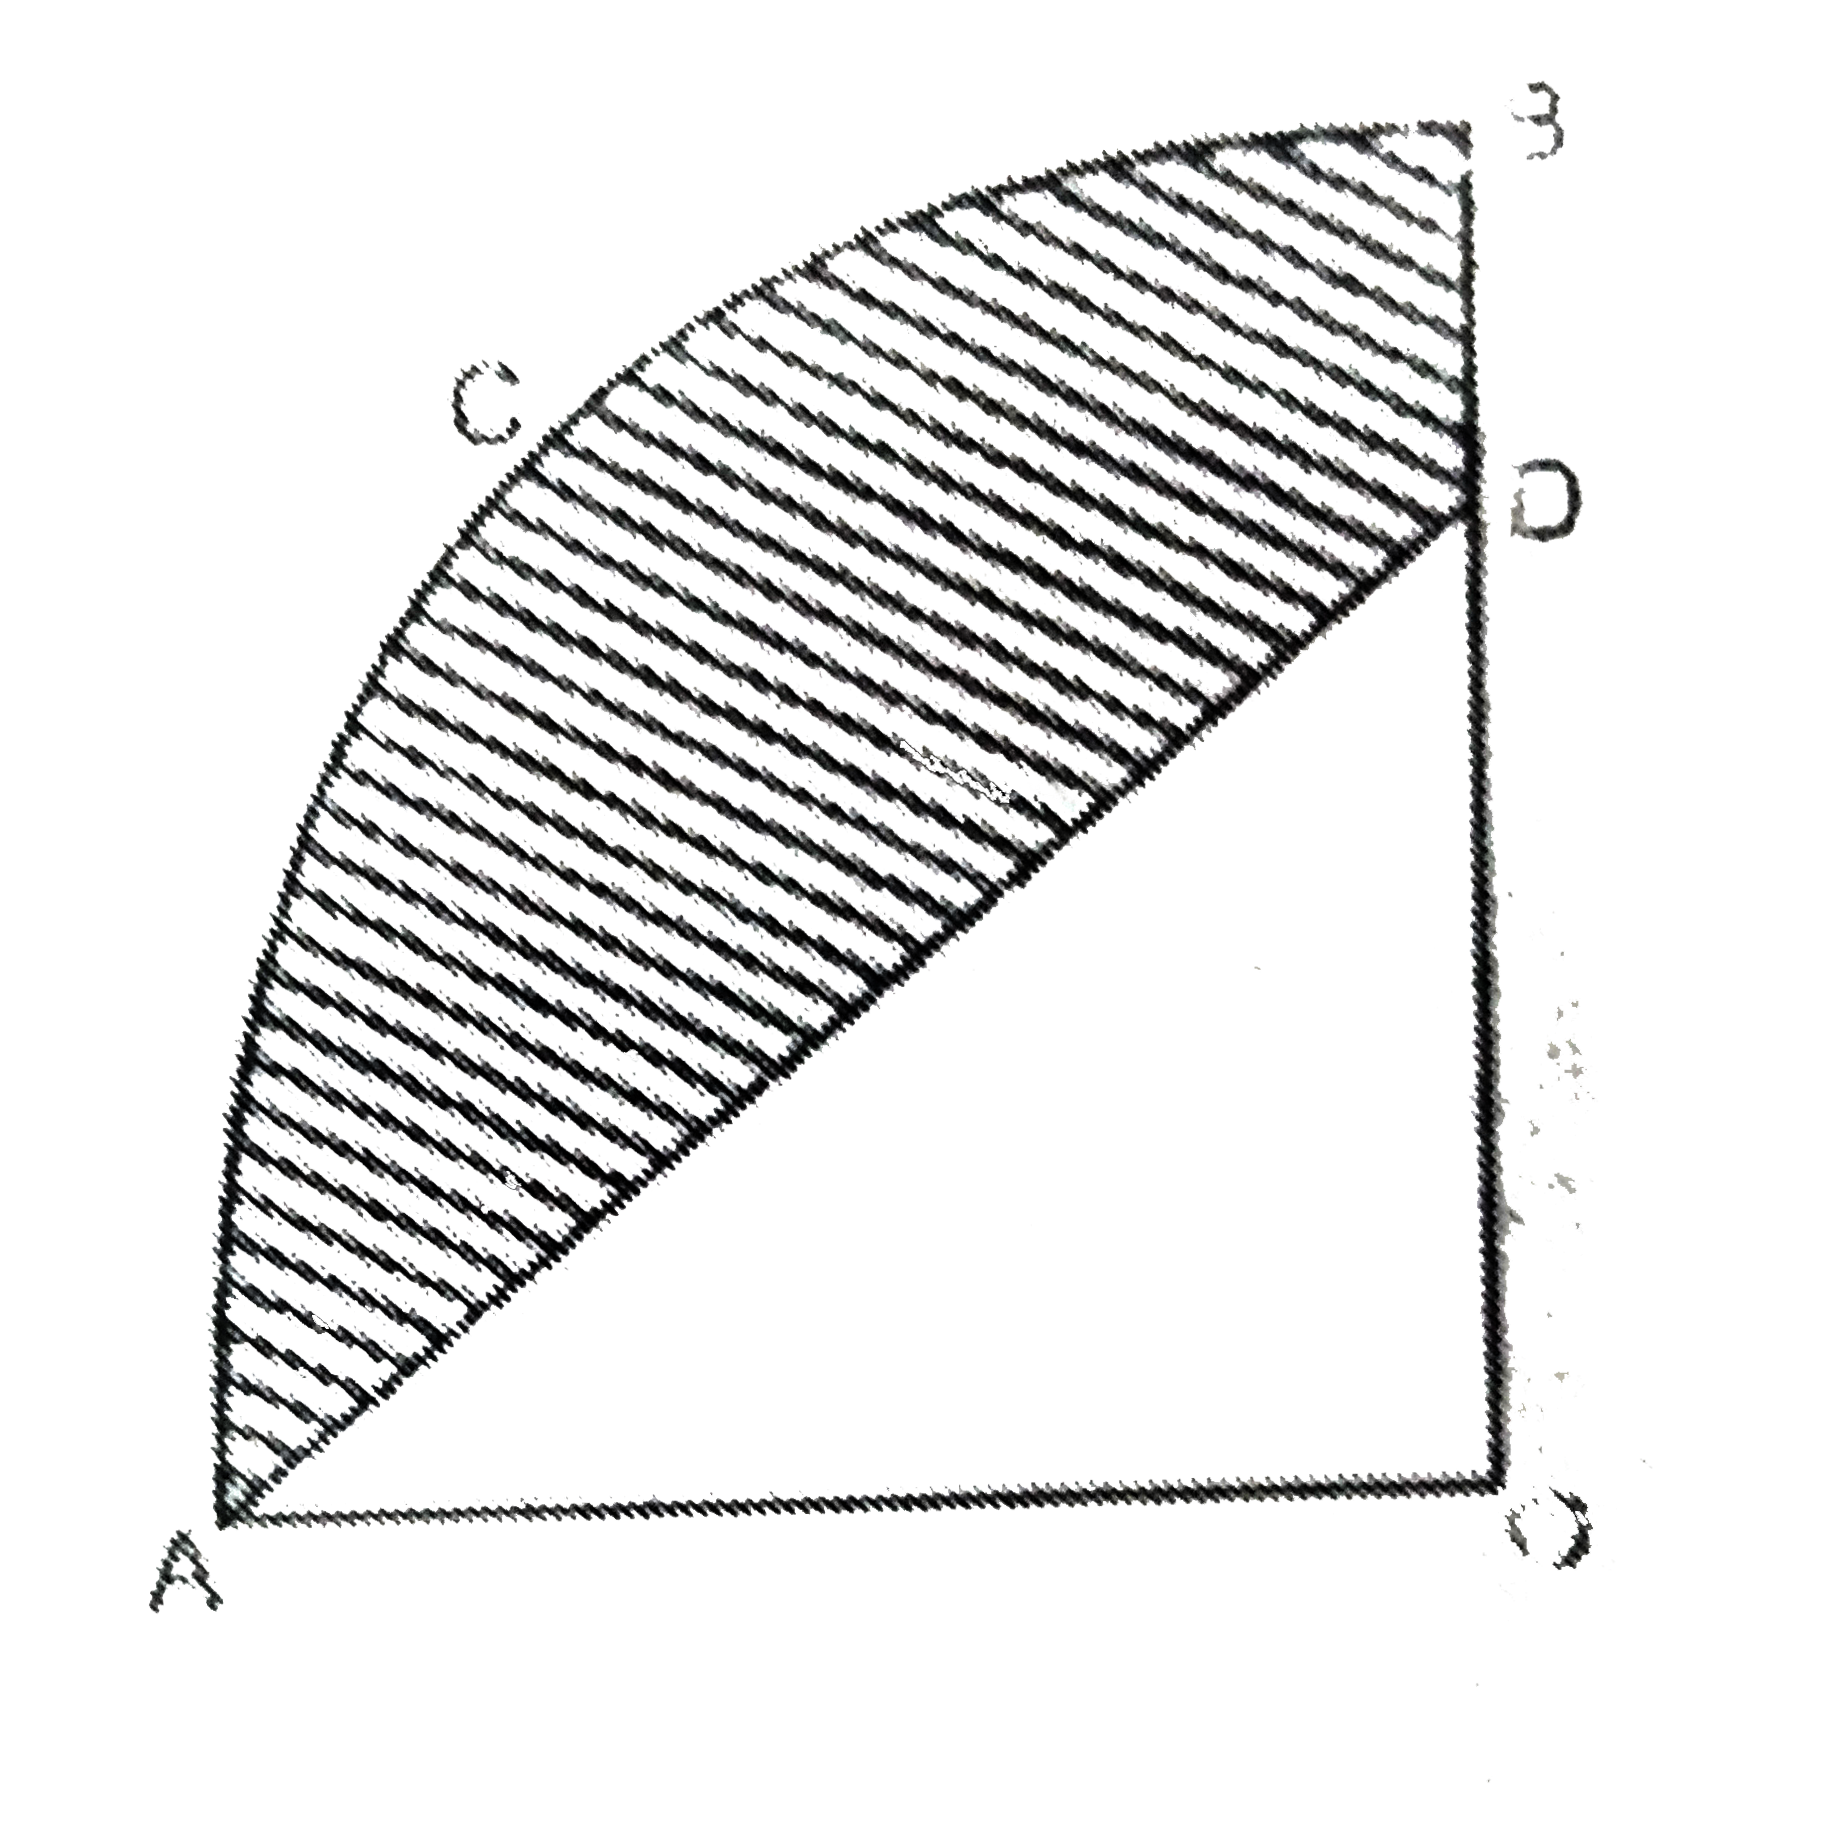 निम्न आकृति में OACB केन्द्र O और त्रिज्या 3.5 सेमी वाले एक वृत्त का चतुर्थाश है। यदि OD=2 सेमी है तो निम्नलिखित के क्षेत्रफल ज्ञात कीजिए।   (i) चतुर्भाश OACB   (ii) छायांकित भाग